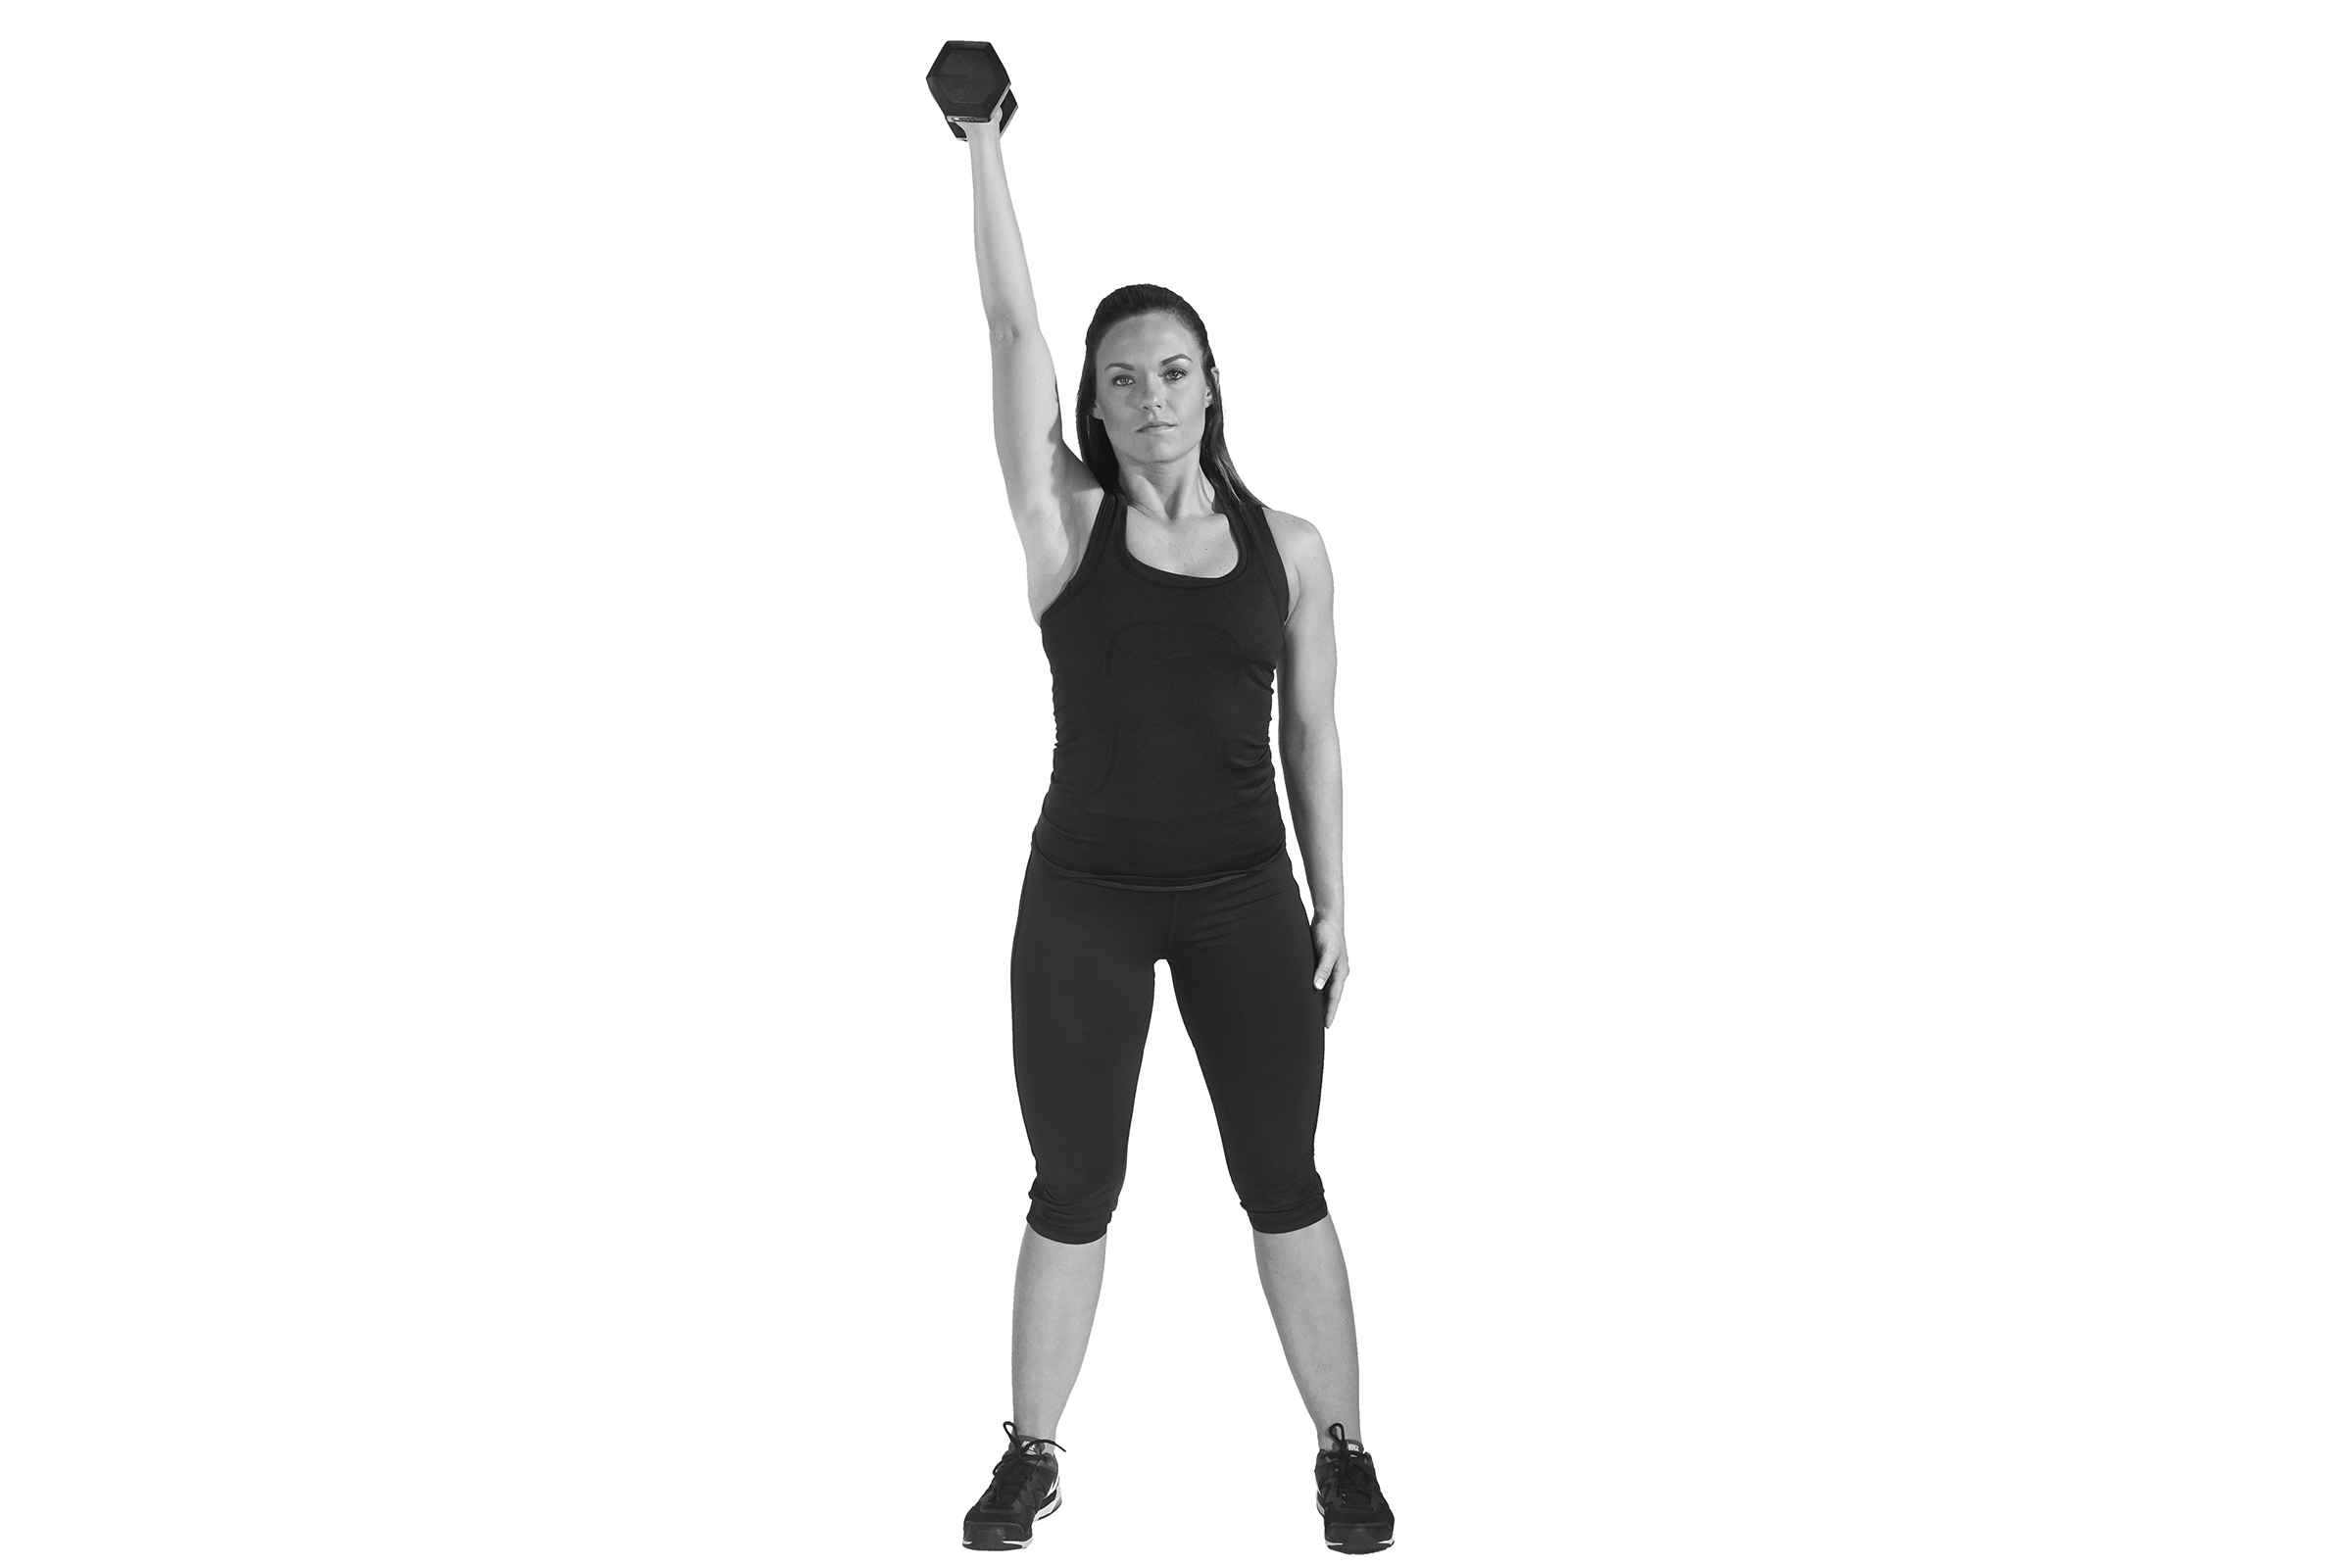 Le dvelopp pouss avec un bras fait partie des exercices recommands pour muscler le haut du corps.